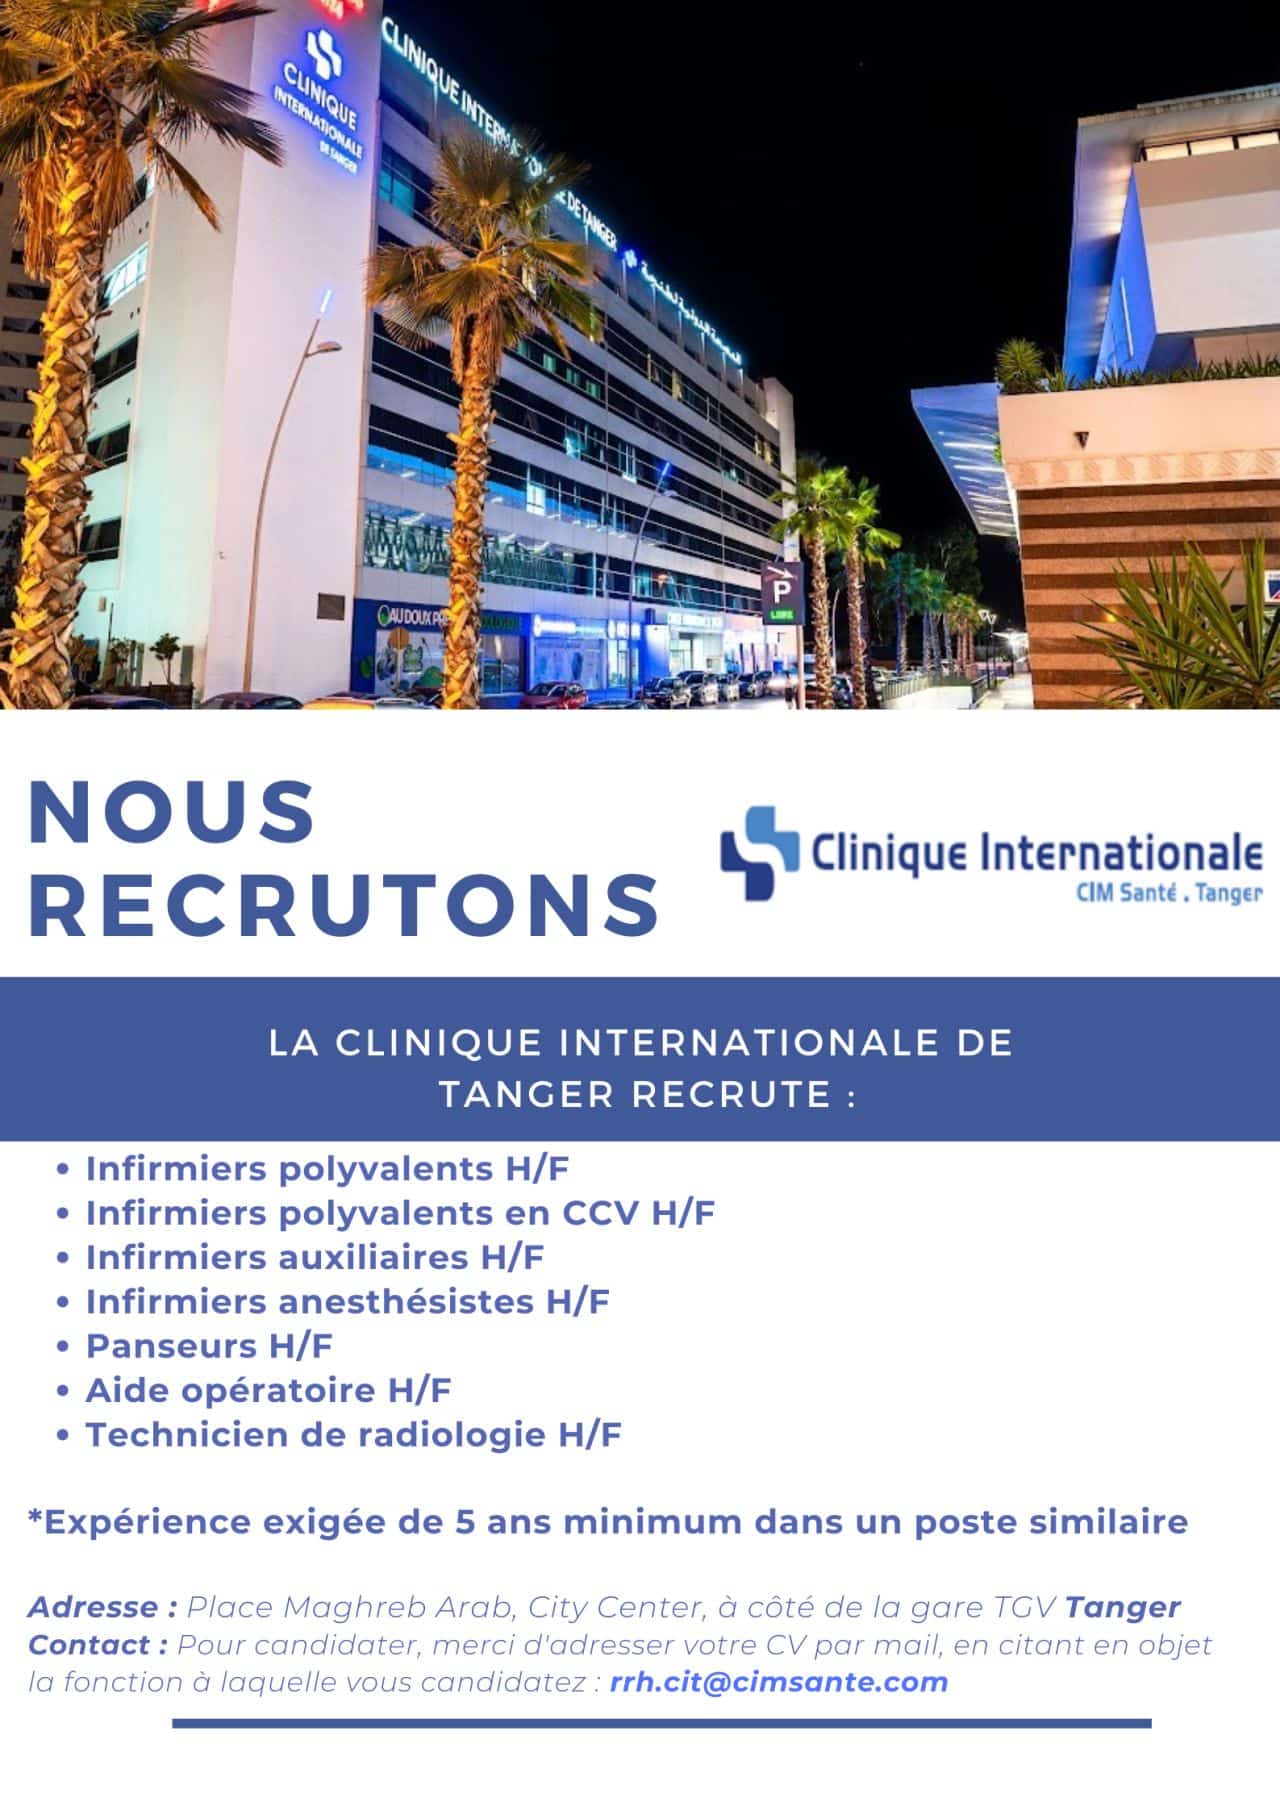 Clinique Internationale de Tanger recrute Plusieurs Profils